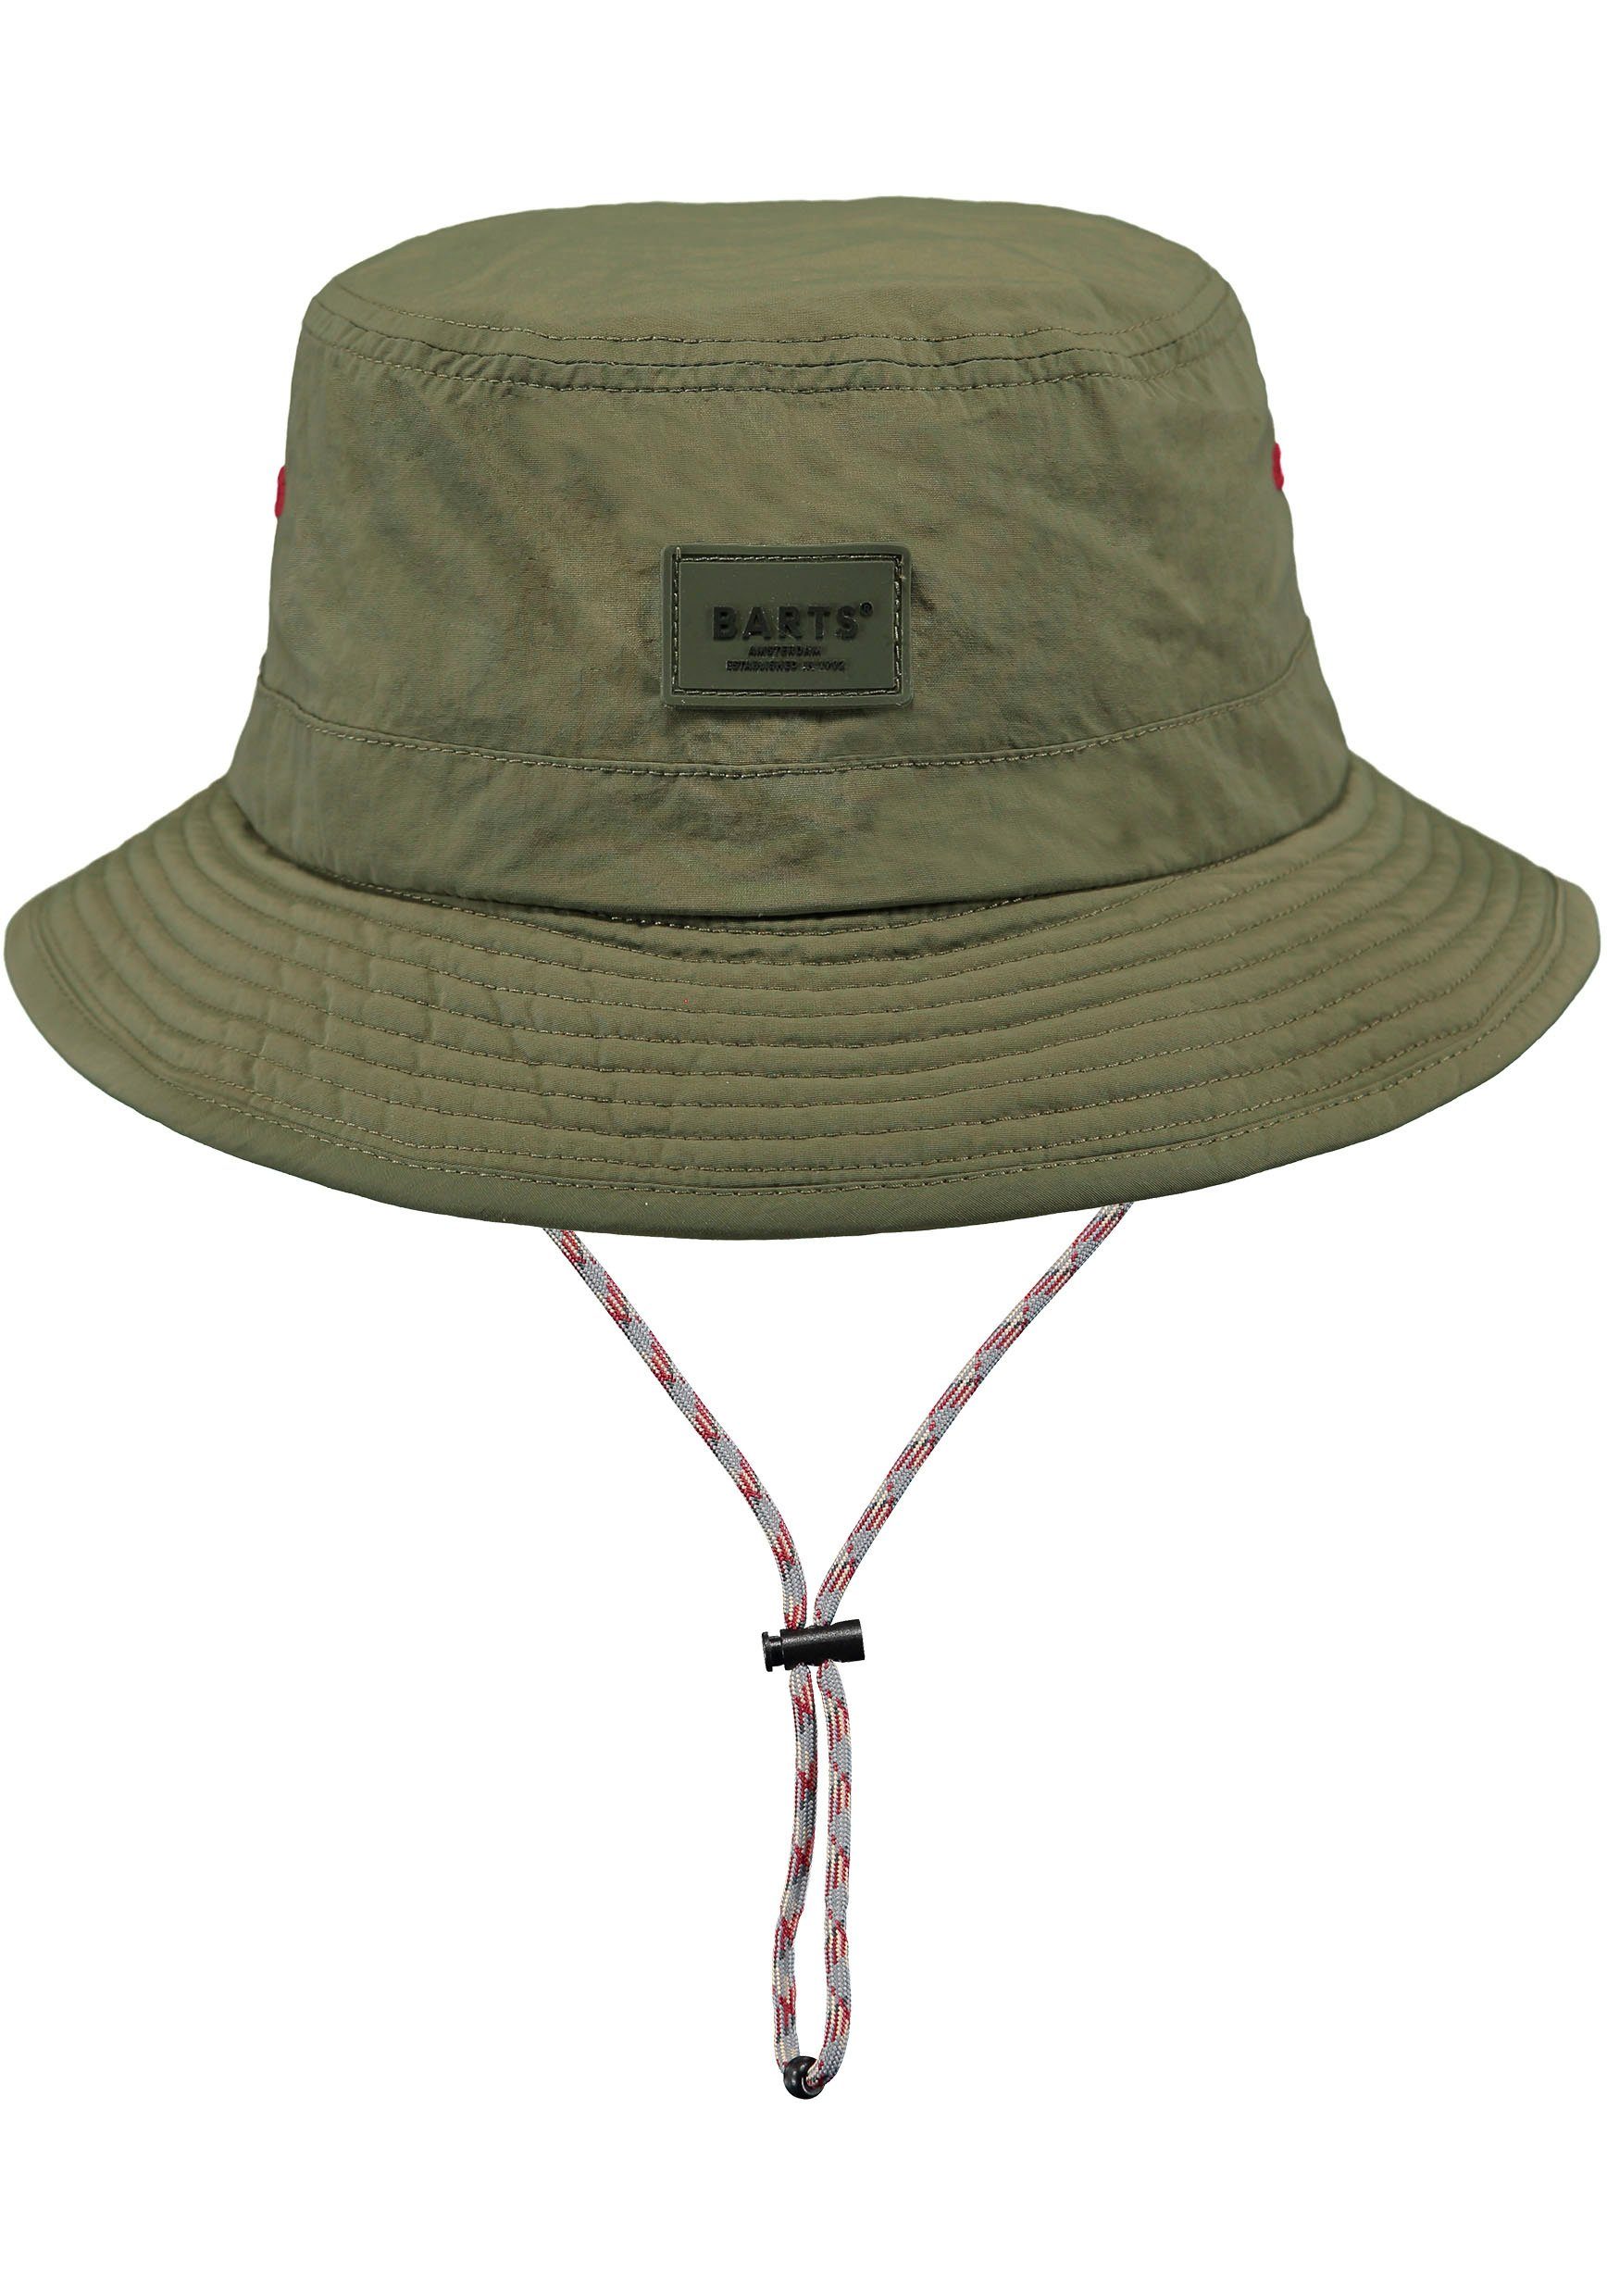 Fischerhut mit Barts olivgrün innenliegendes Hutband verstellbare Bindeband, Passform durch